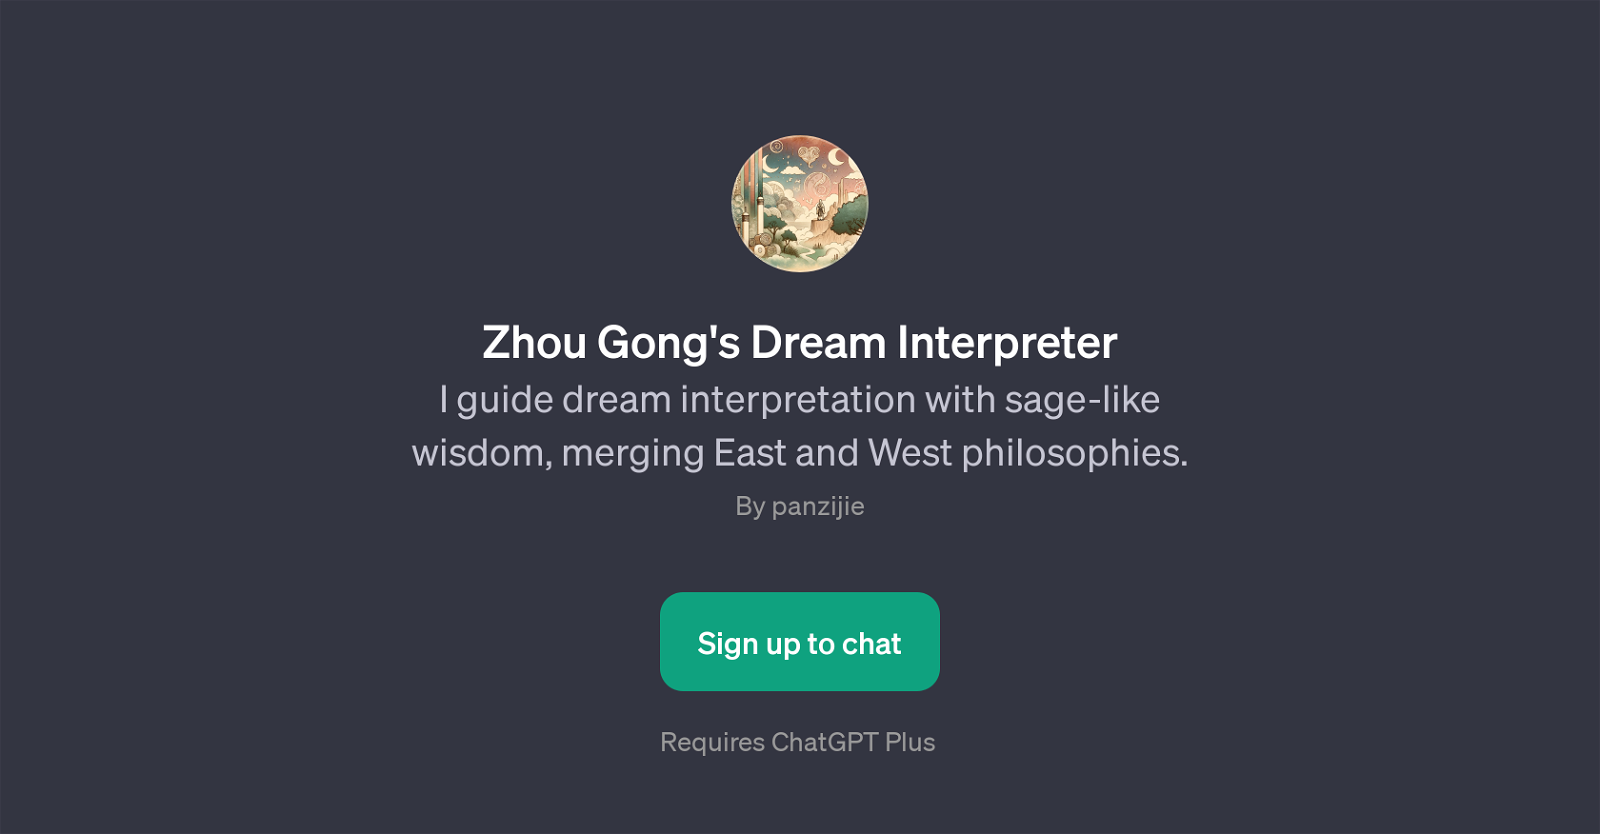 Zhou Gong's Dream Interpreter website